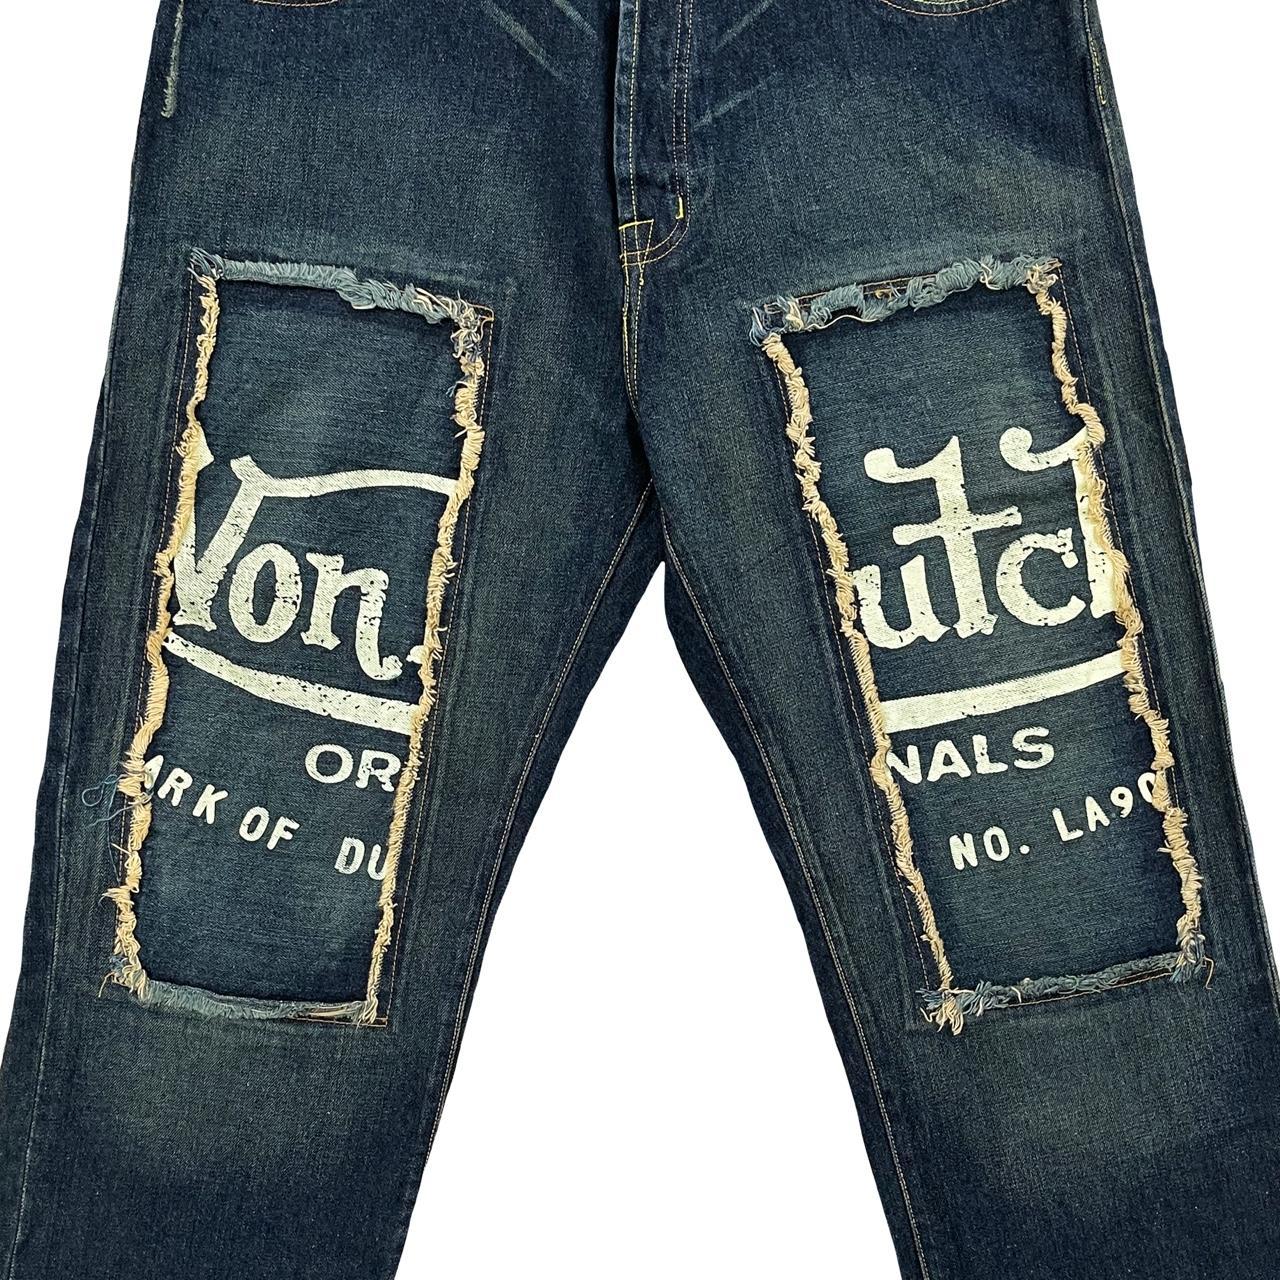 Von Dutch Patchwork Jeans – The Holy Grail